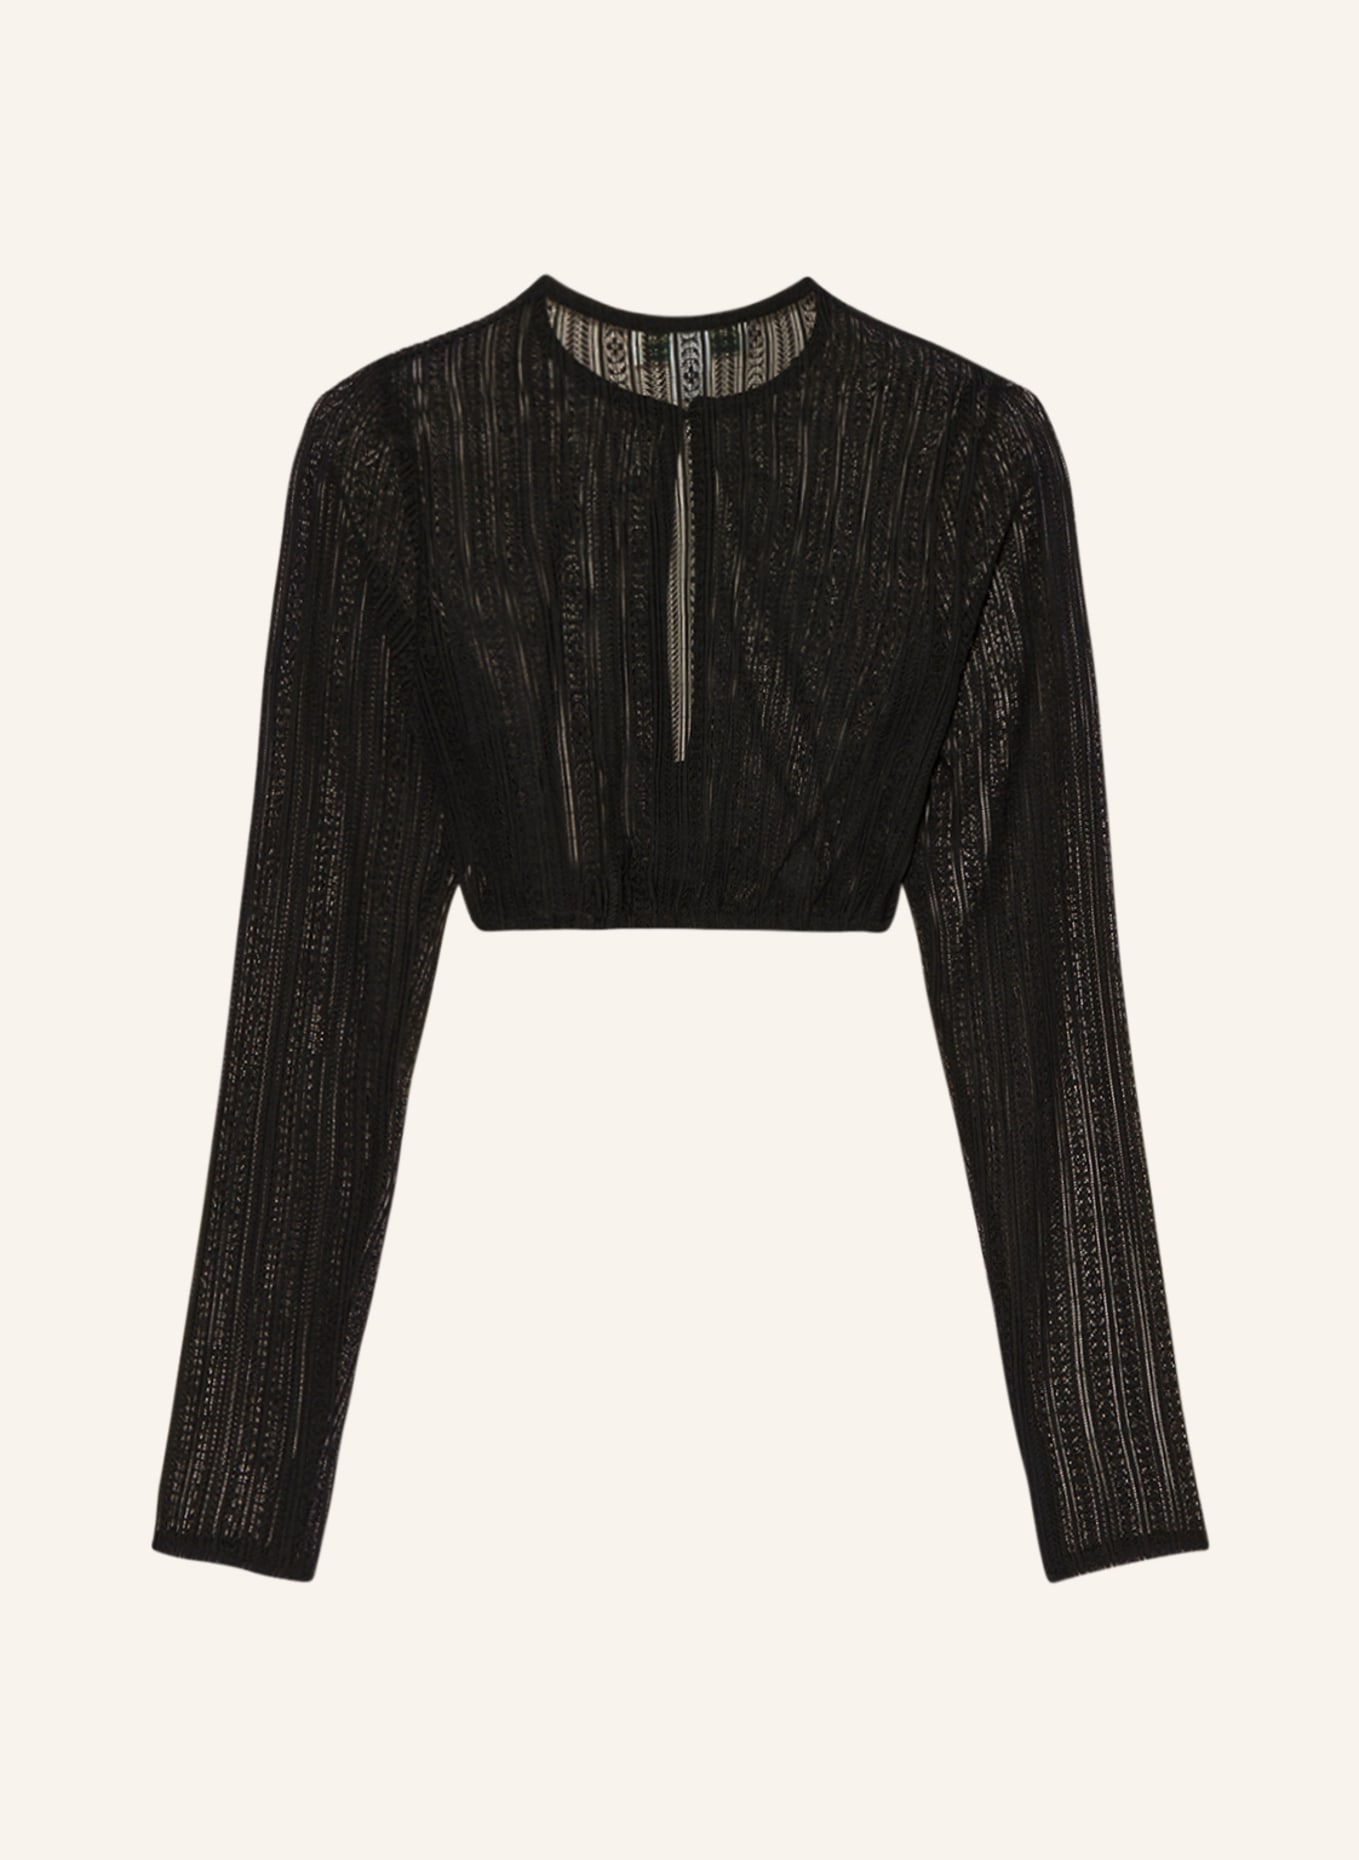 Hammerschmid Dirndl blouse made of lace, Color: BLACK (Image 2)